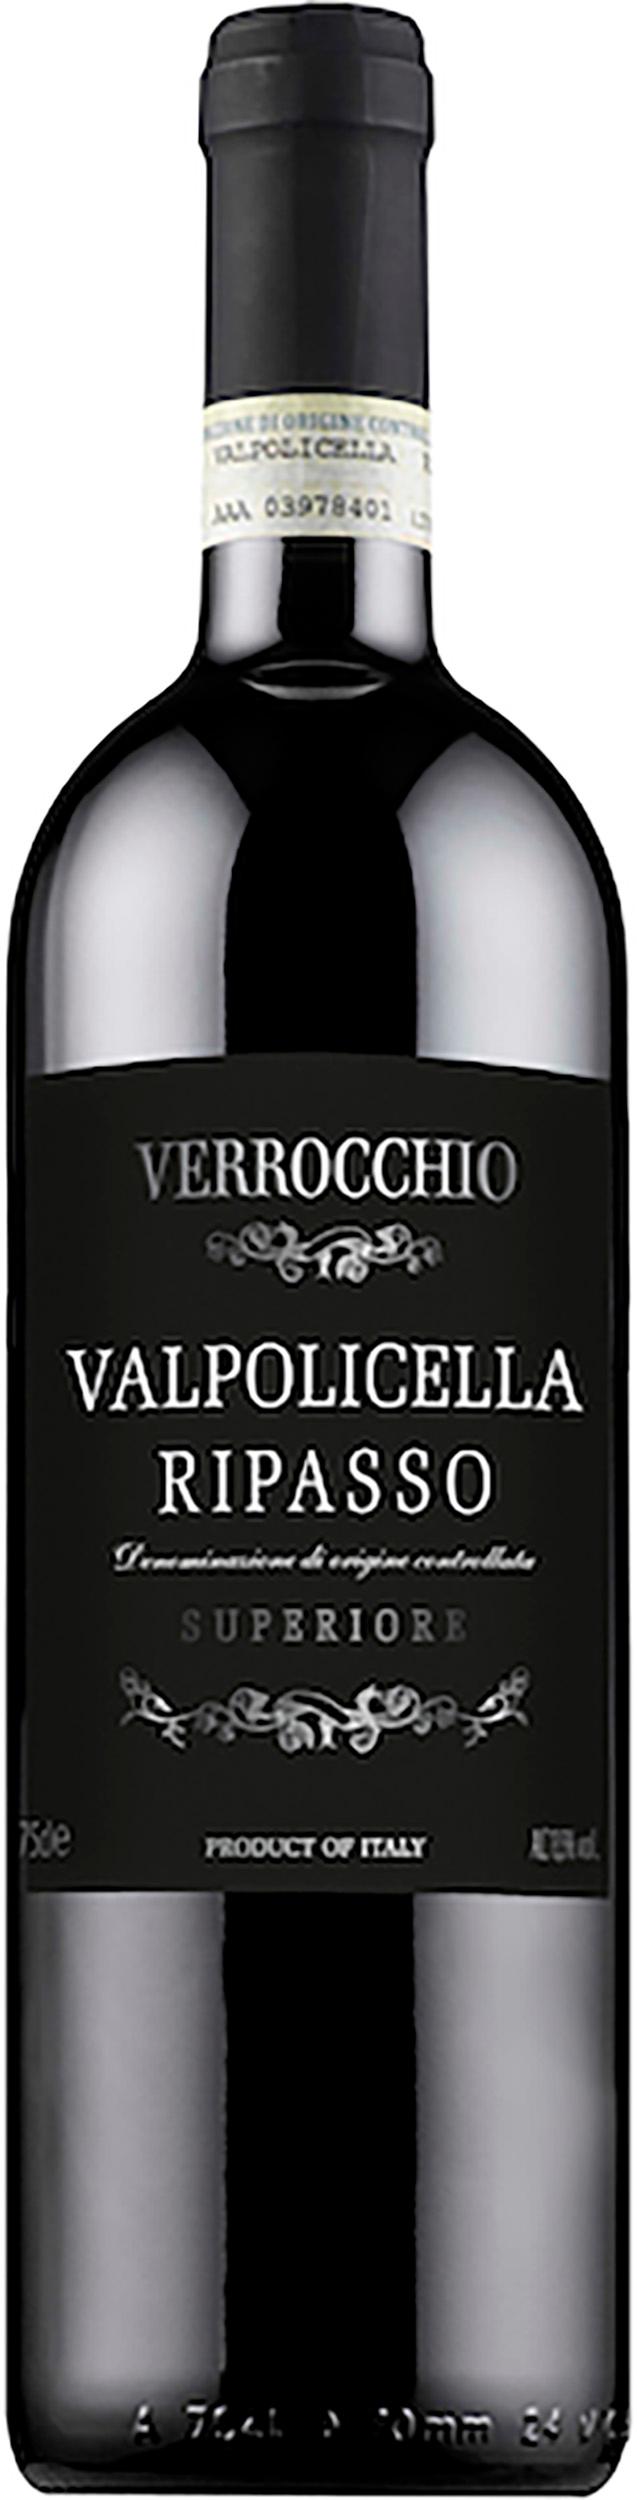 Verrocchio Valpolicella Ripasso Superiore 2020